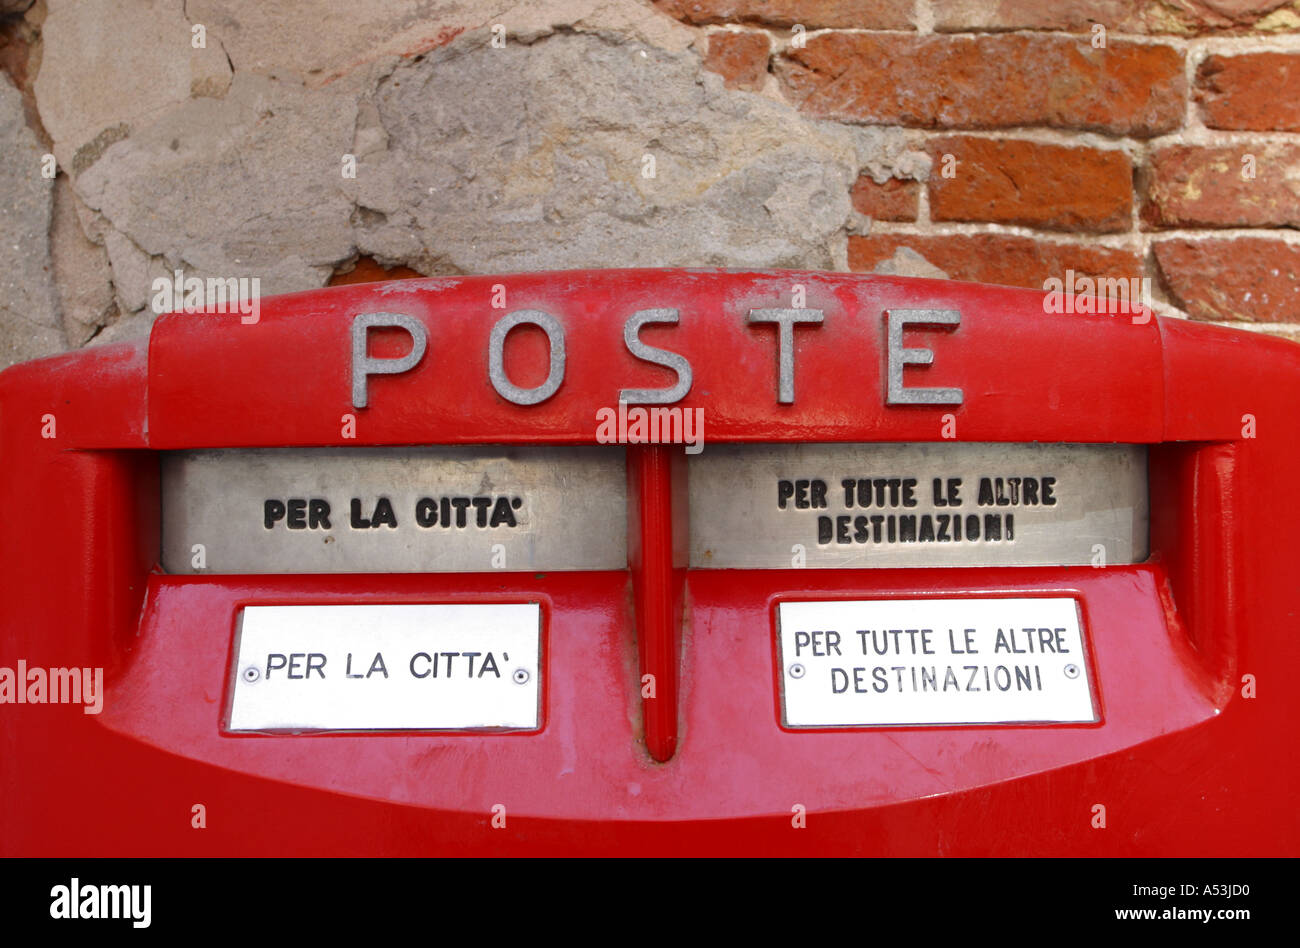 Briefkasten in Venedig Italien Poste Stockfotografie - Alamy